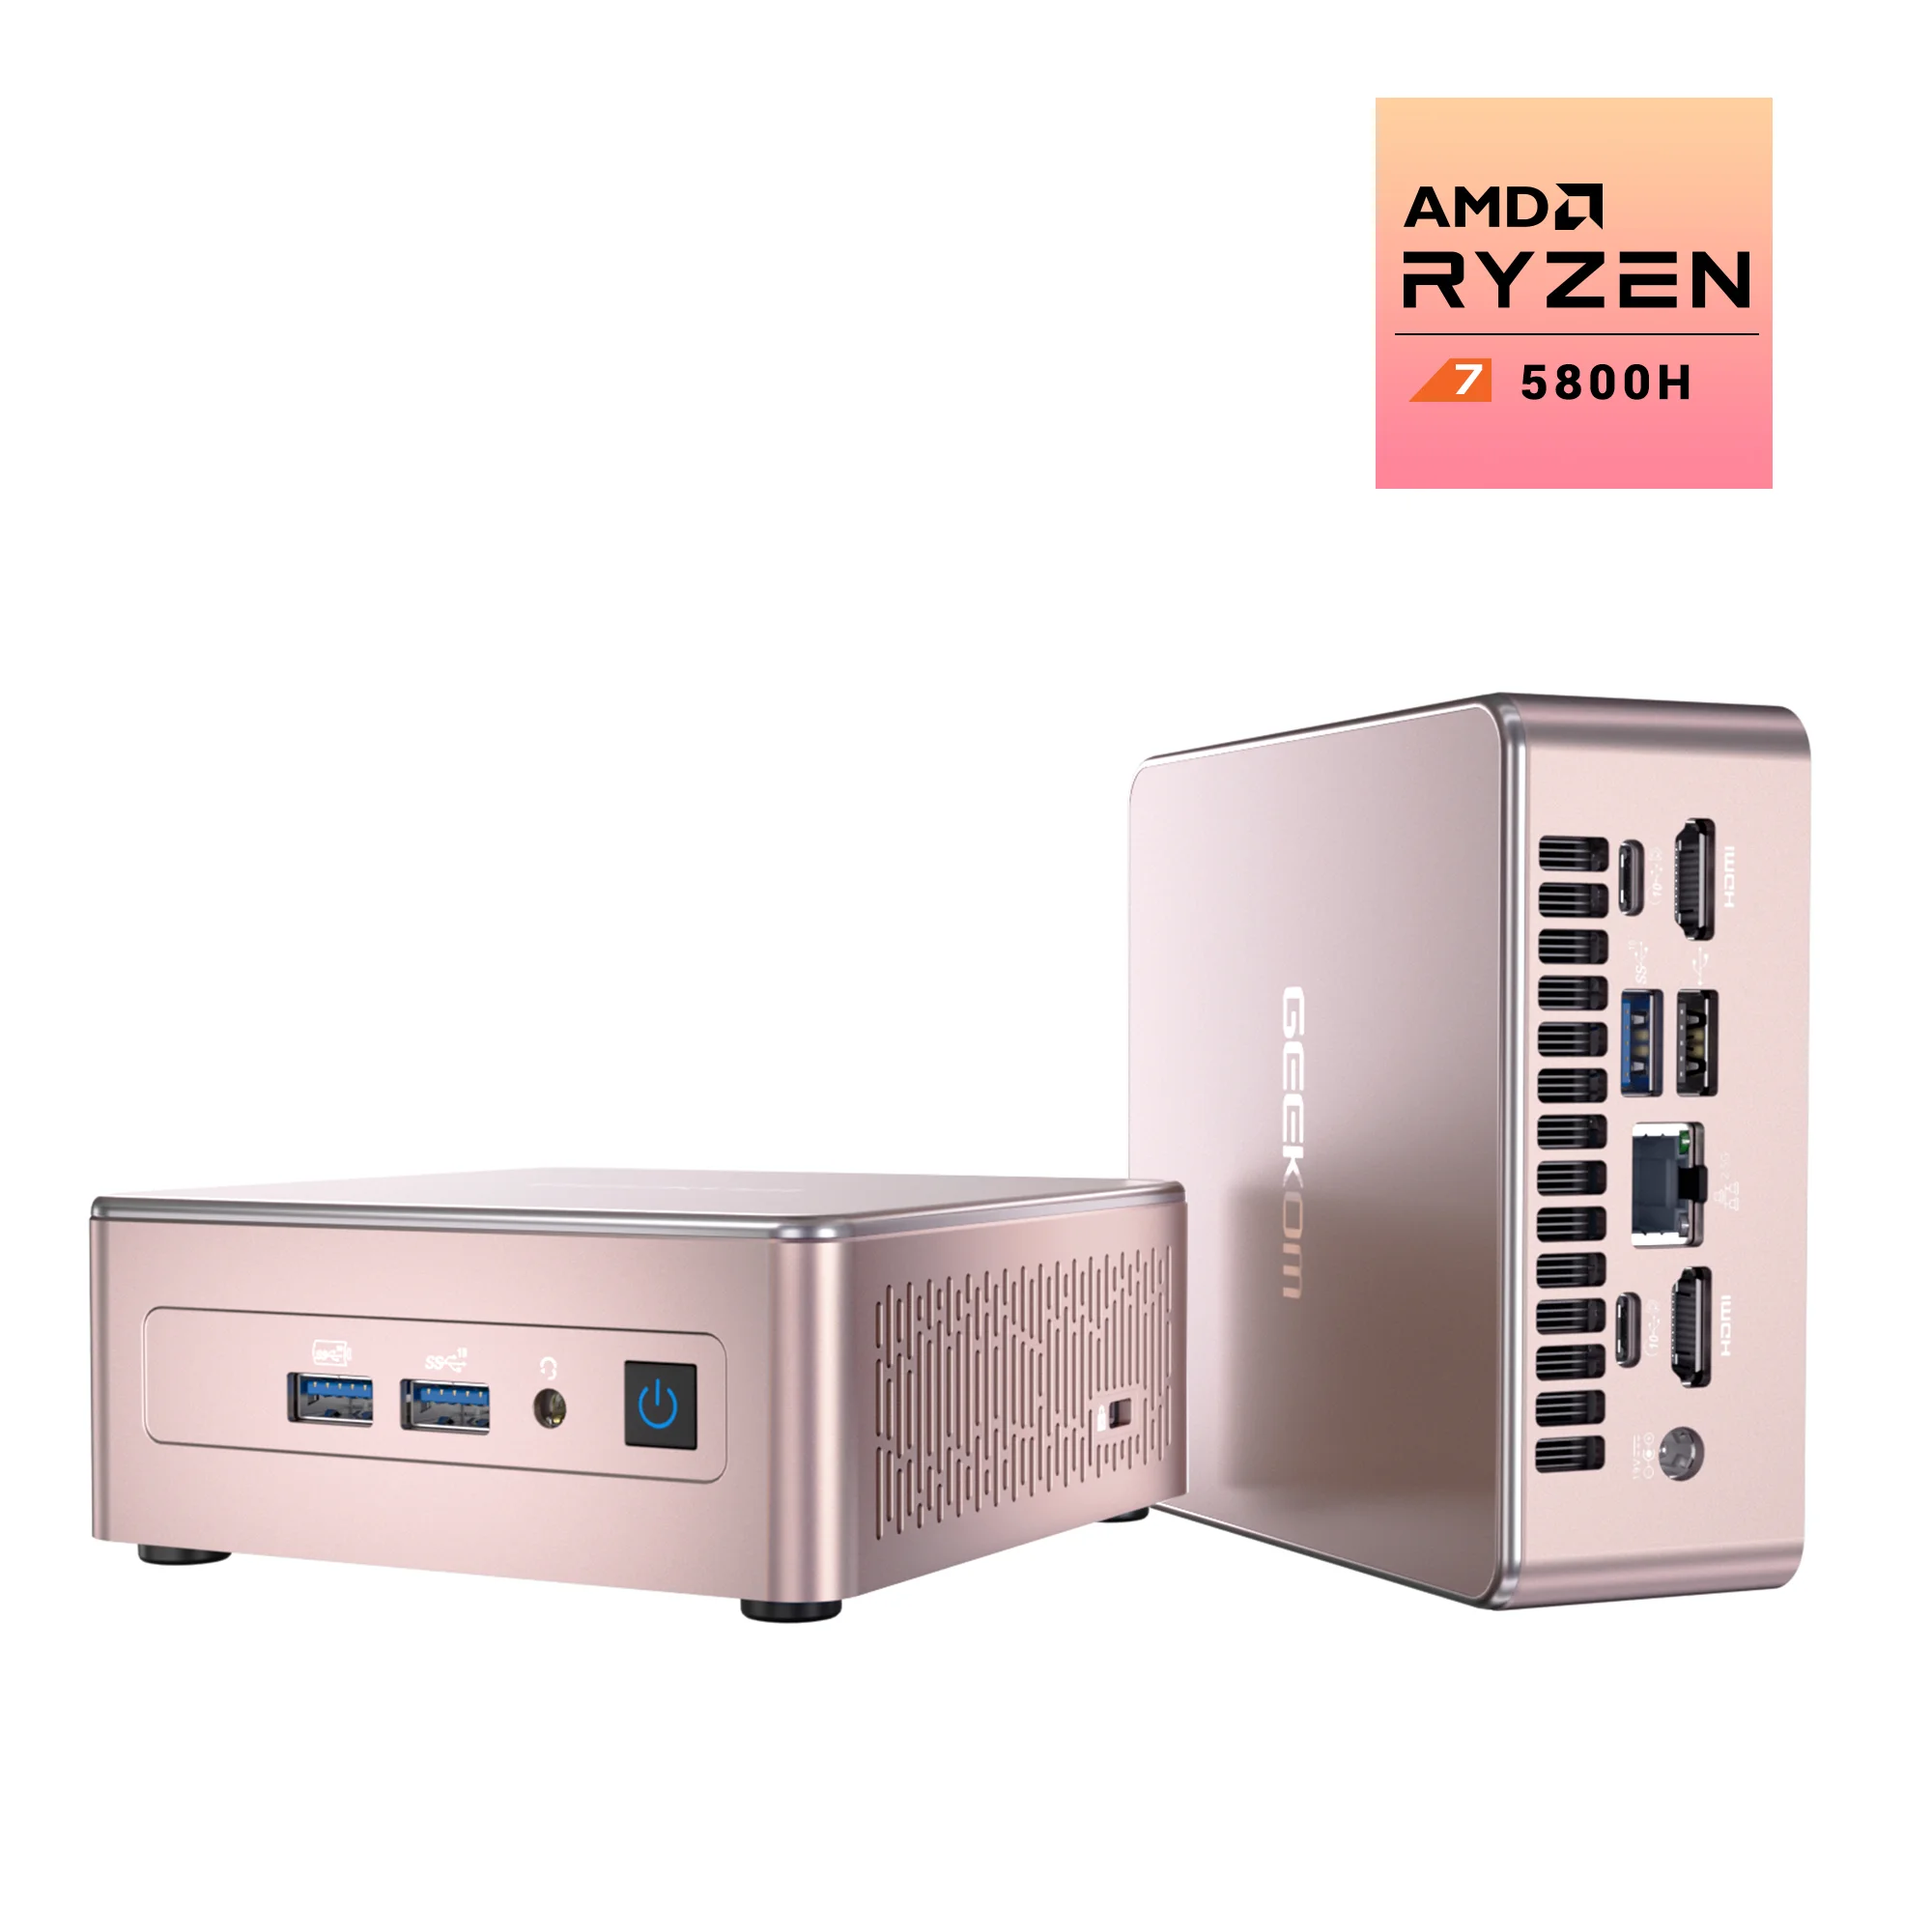 GEEKOM AS 5: Mini PC with AMD Ryzen 9 5900HX